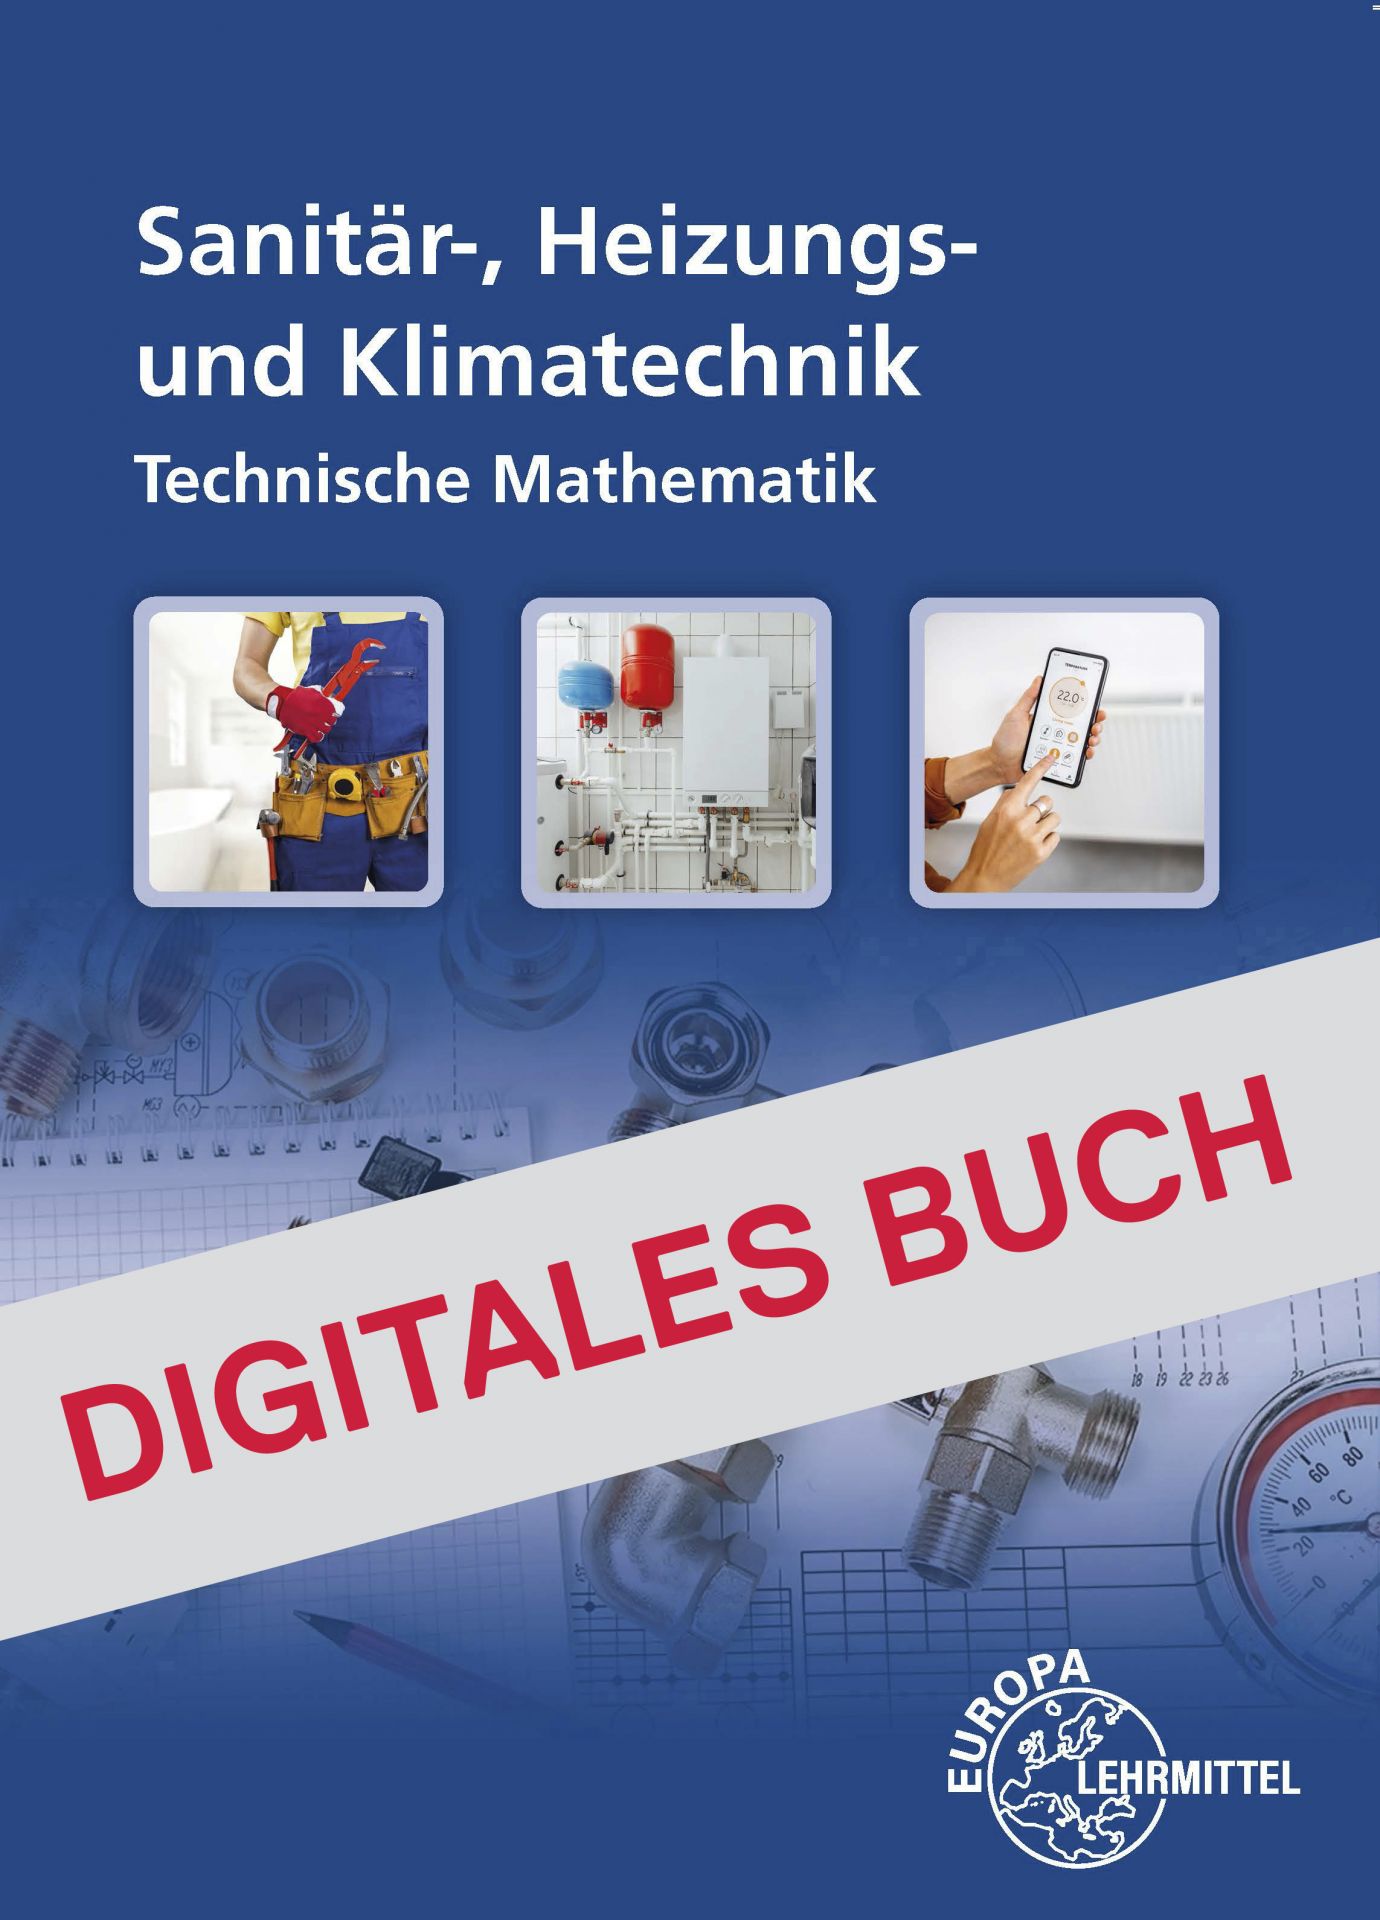 Sanitär-, Heizungs- und Klimatechnik Technische Mathematik - Digitales Buch